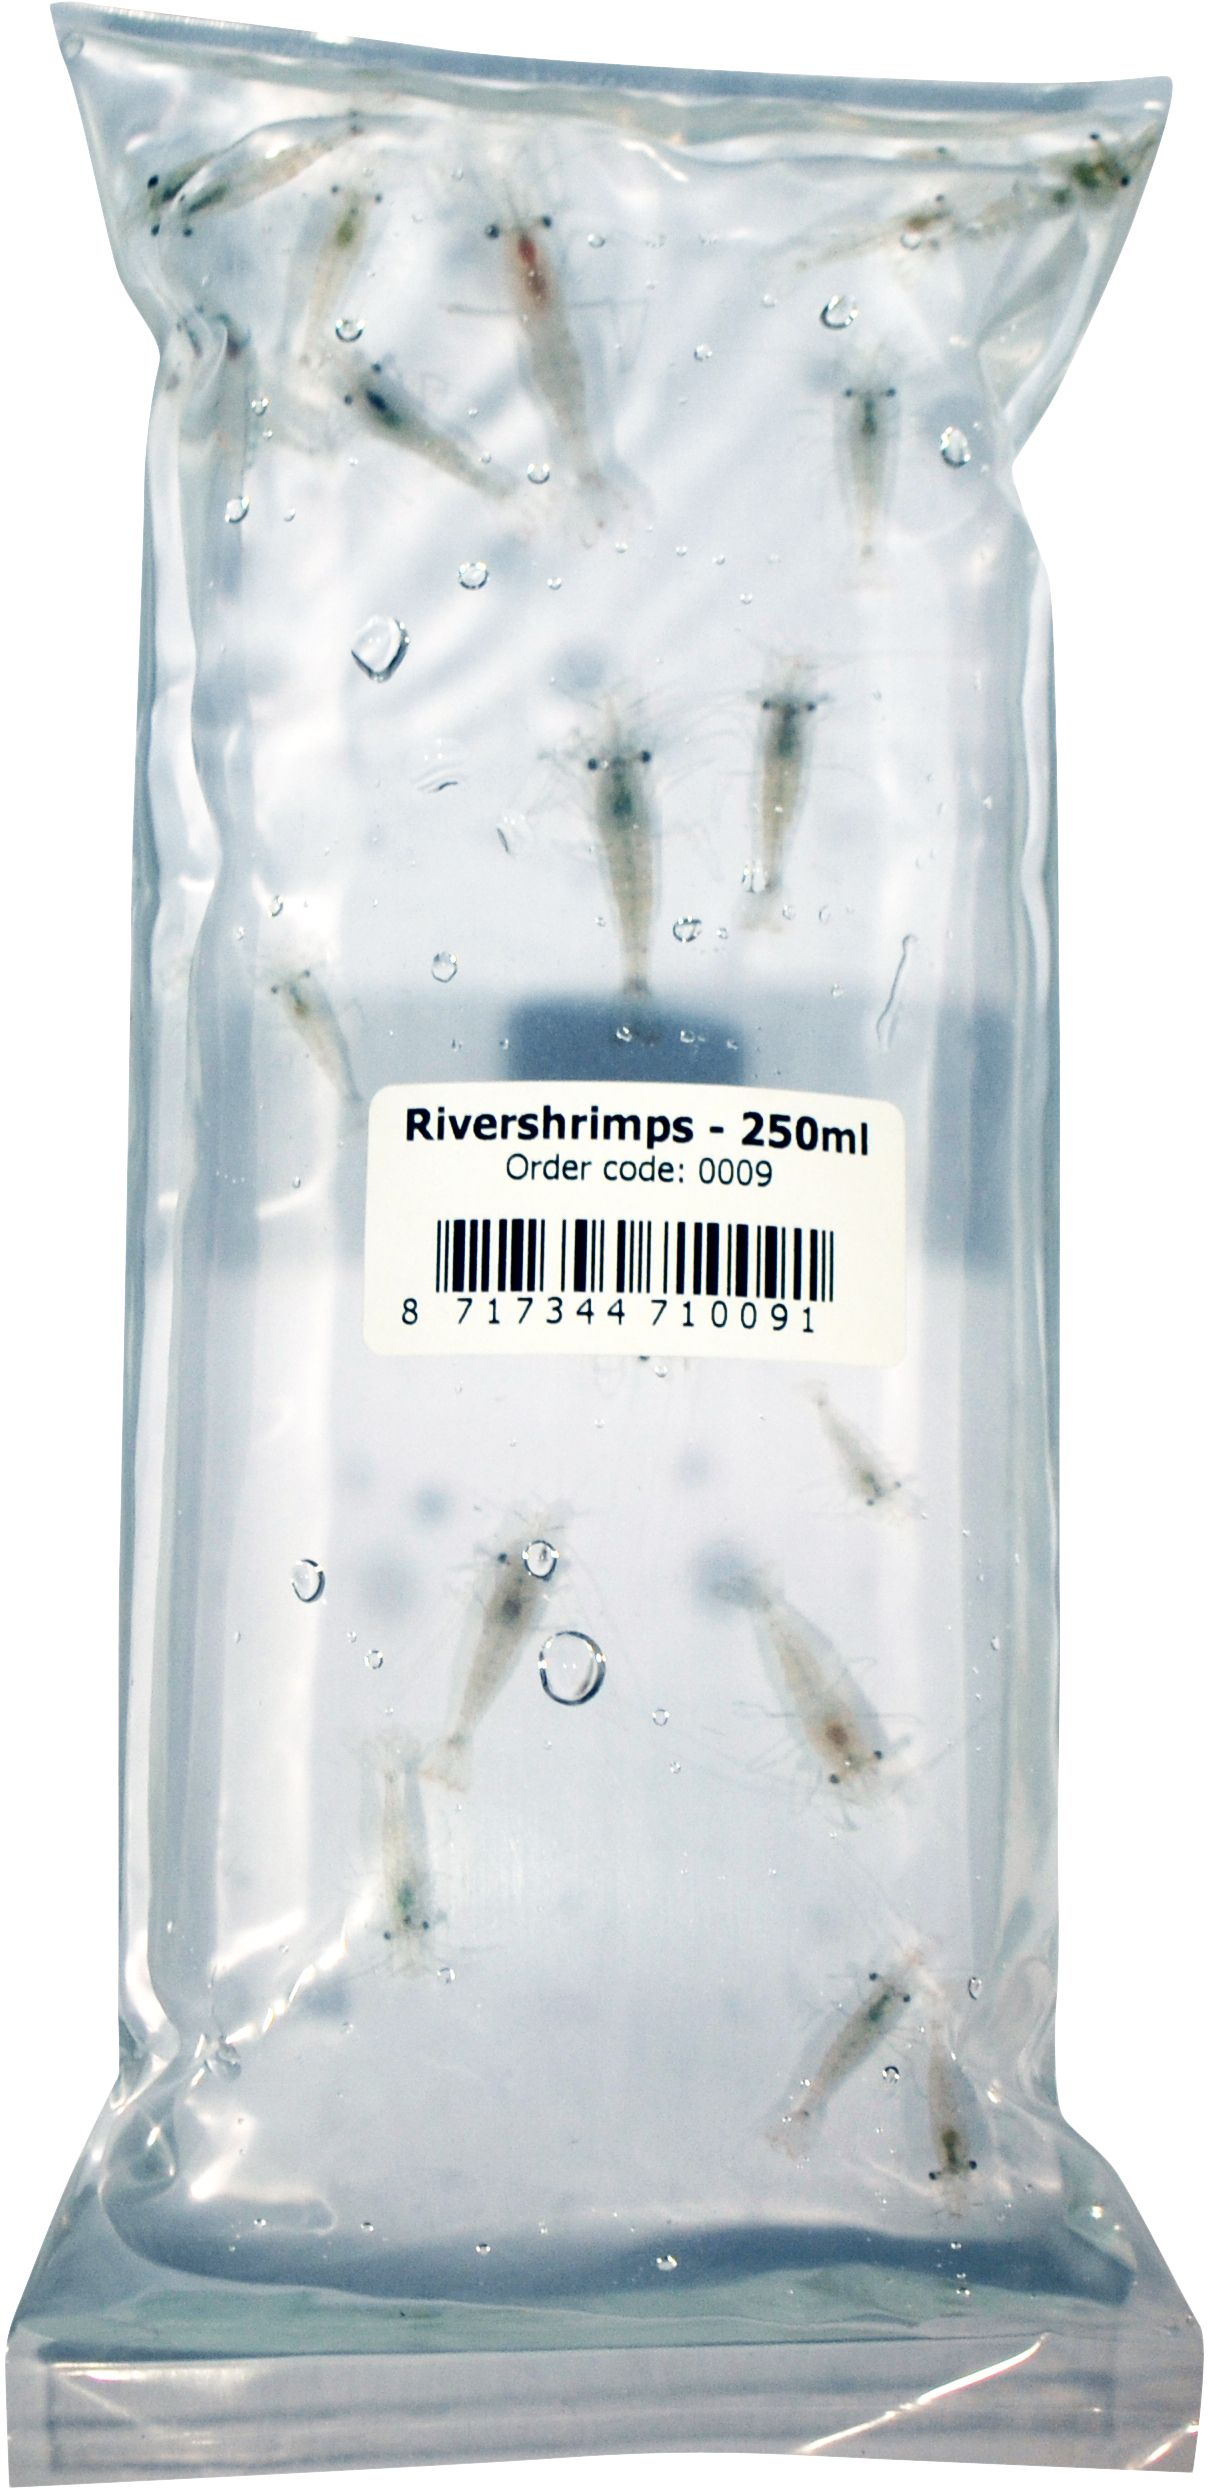 AQUADIP River shrimps